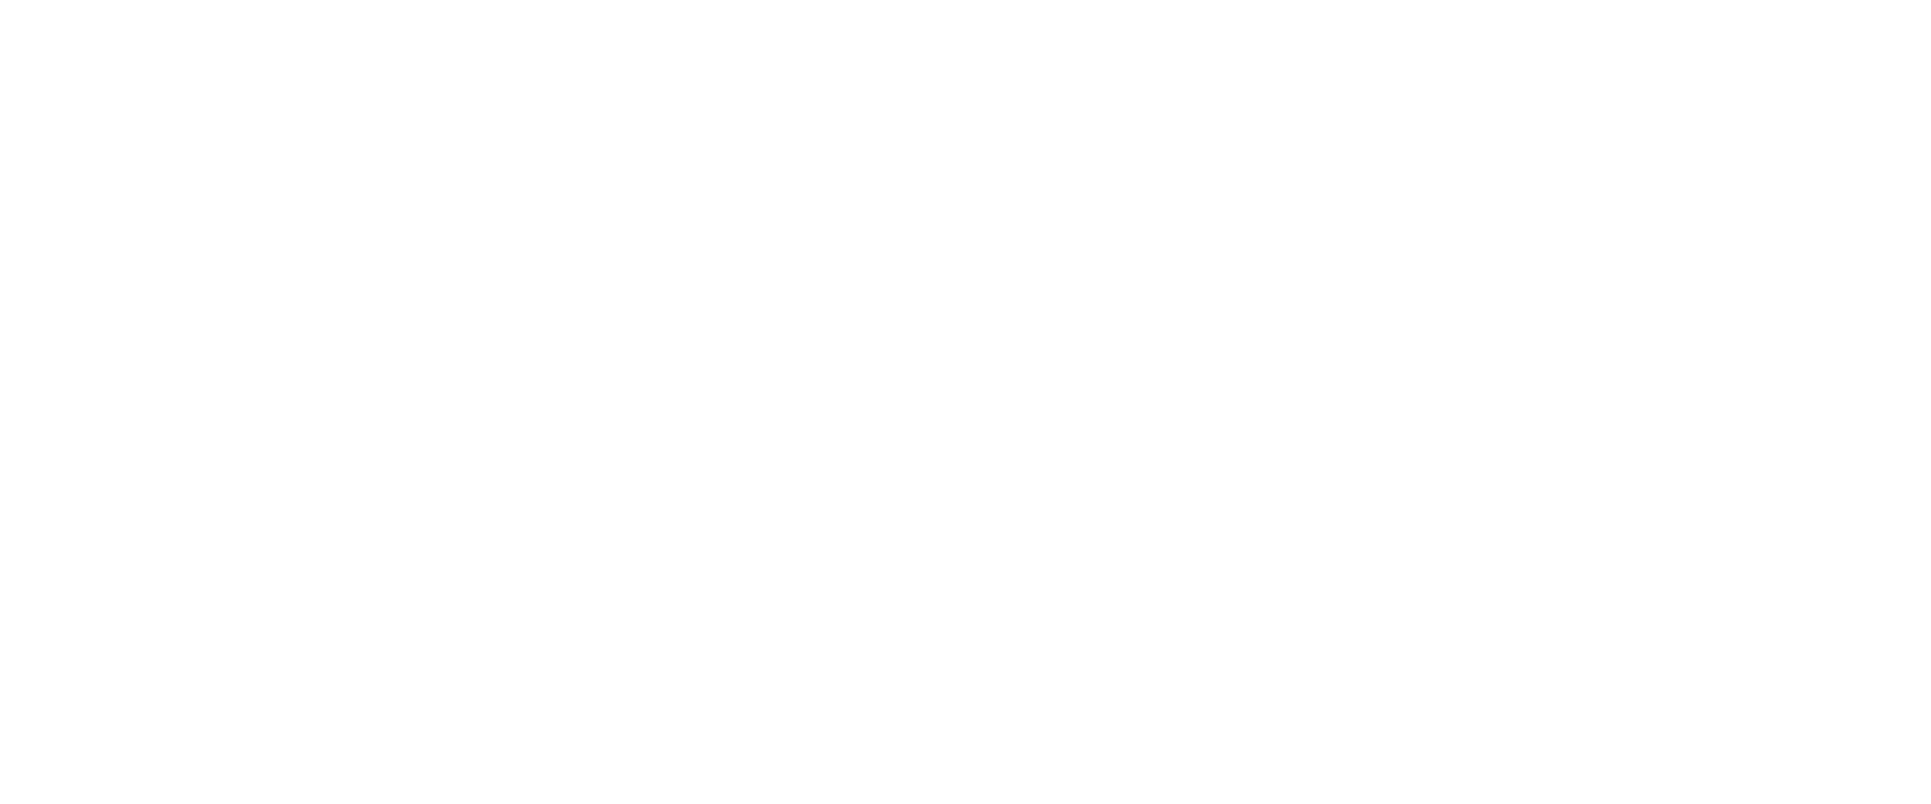 عالم الكاميرا  | Alam Al Camera